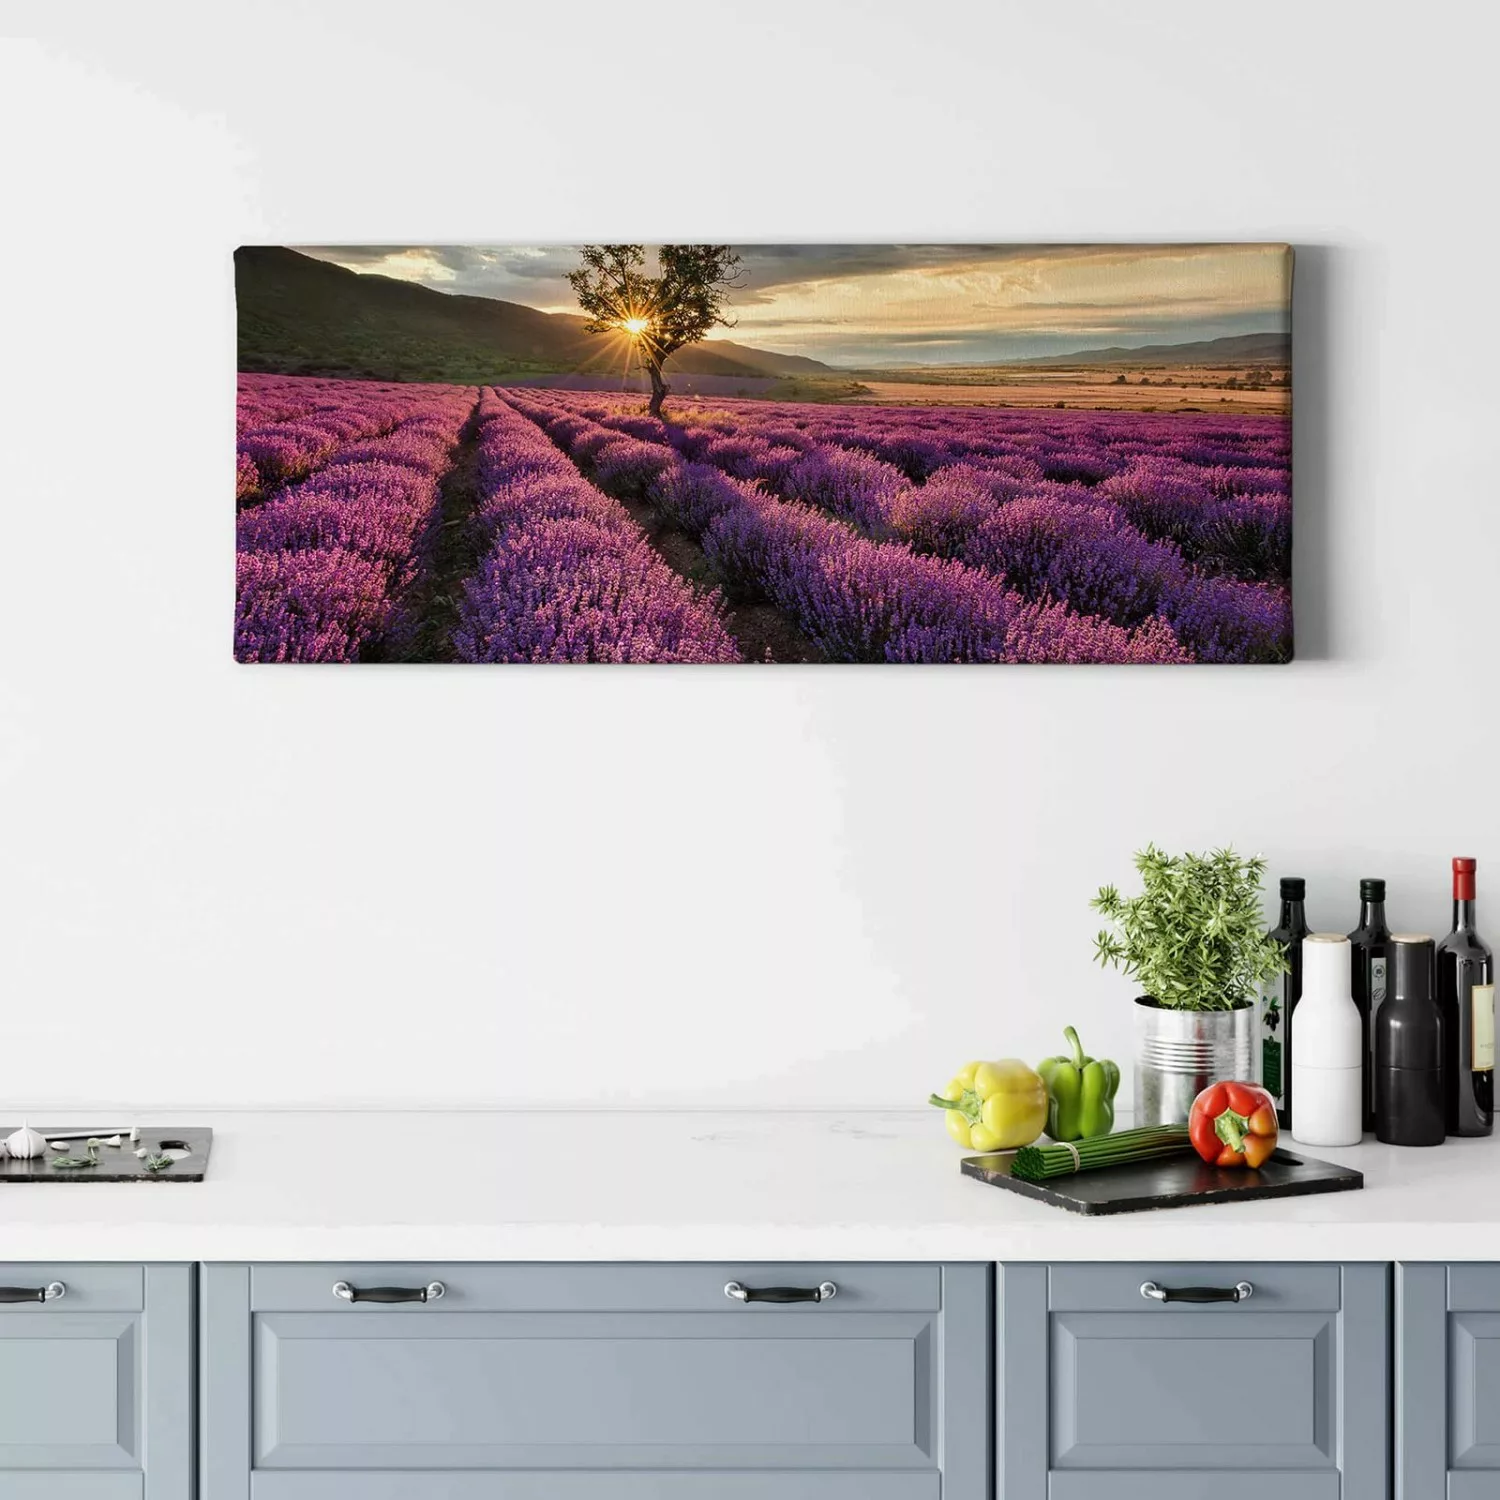 Bricoflor Leinwand Bild Lavendelfeld Lila Wandbild Mit Lavendel Und Baum Mo günstig online kaufen